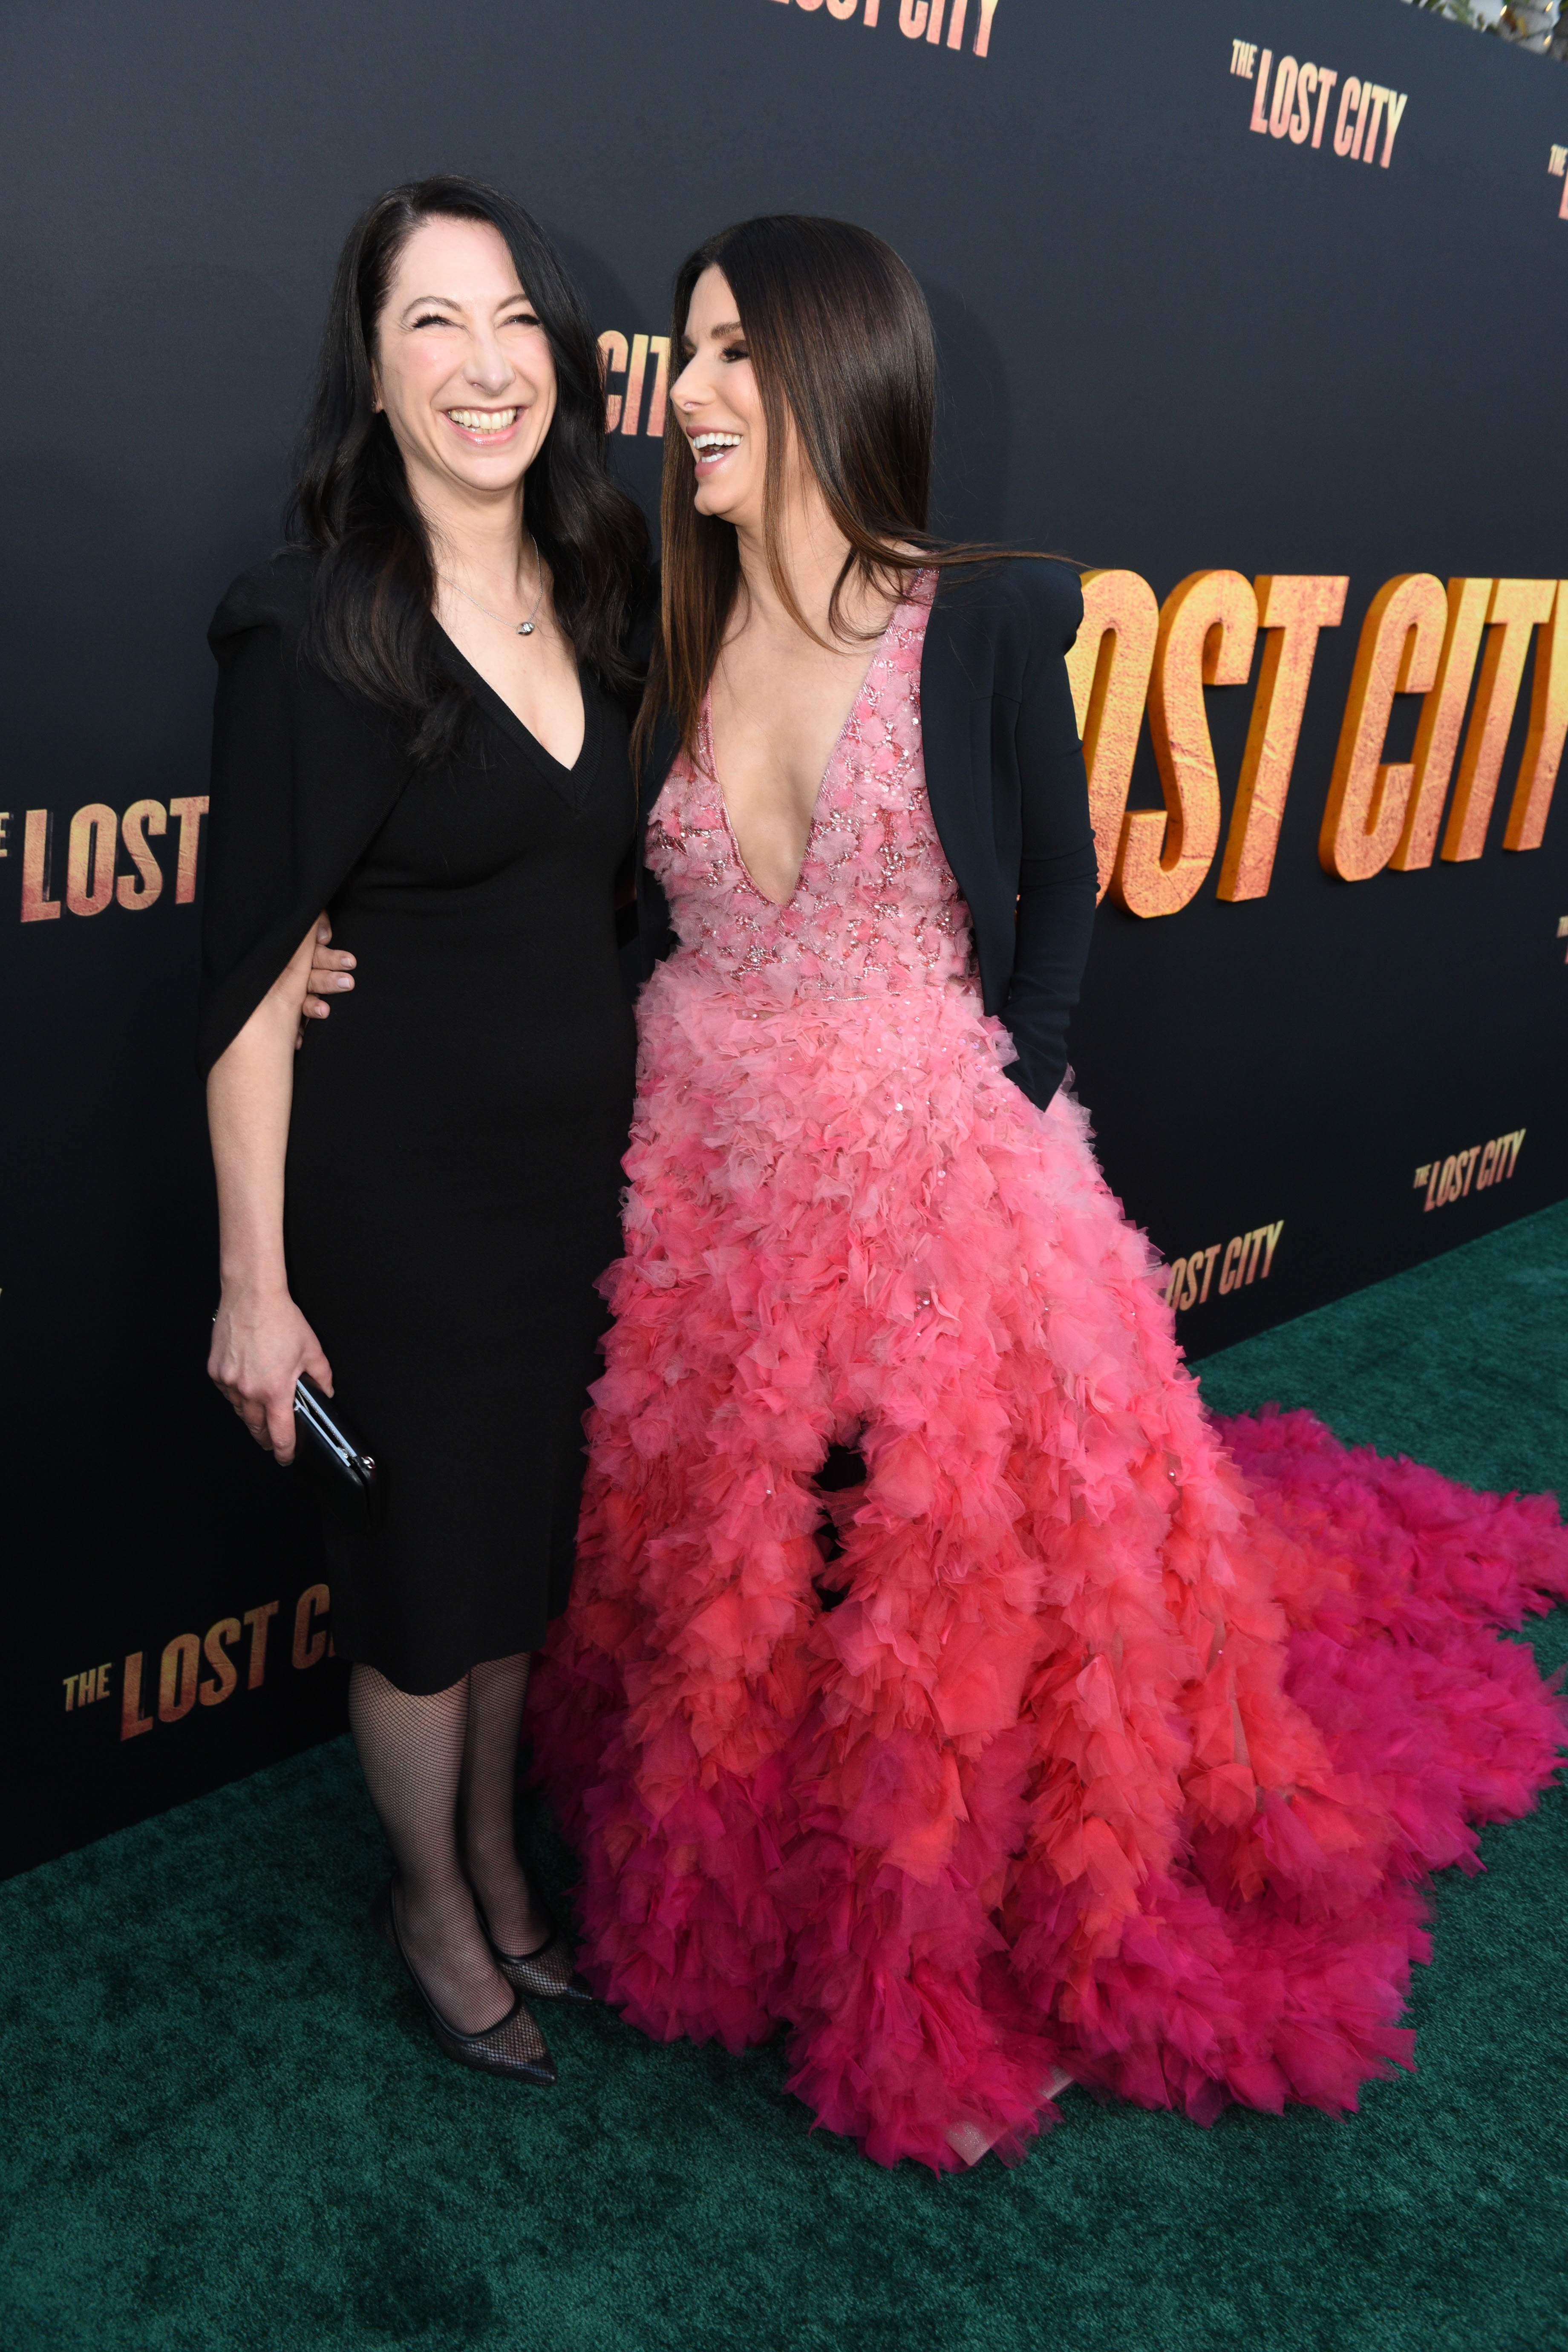 Gesine Bullock-Prado und Sandra Bullock bei der Premiere von "The Lost City" in Los Angeles, 2022 | Quelle: Getty Images